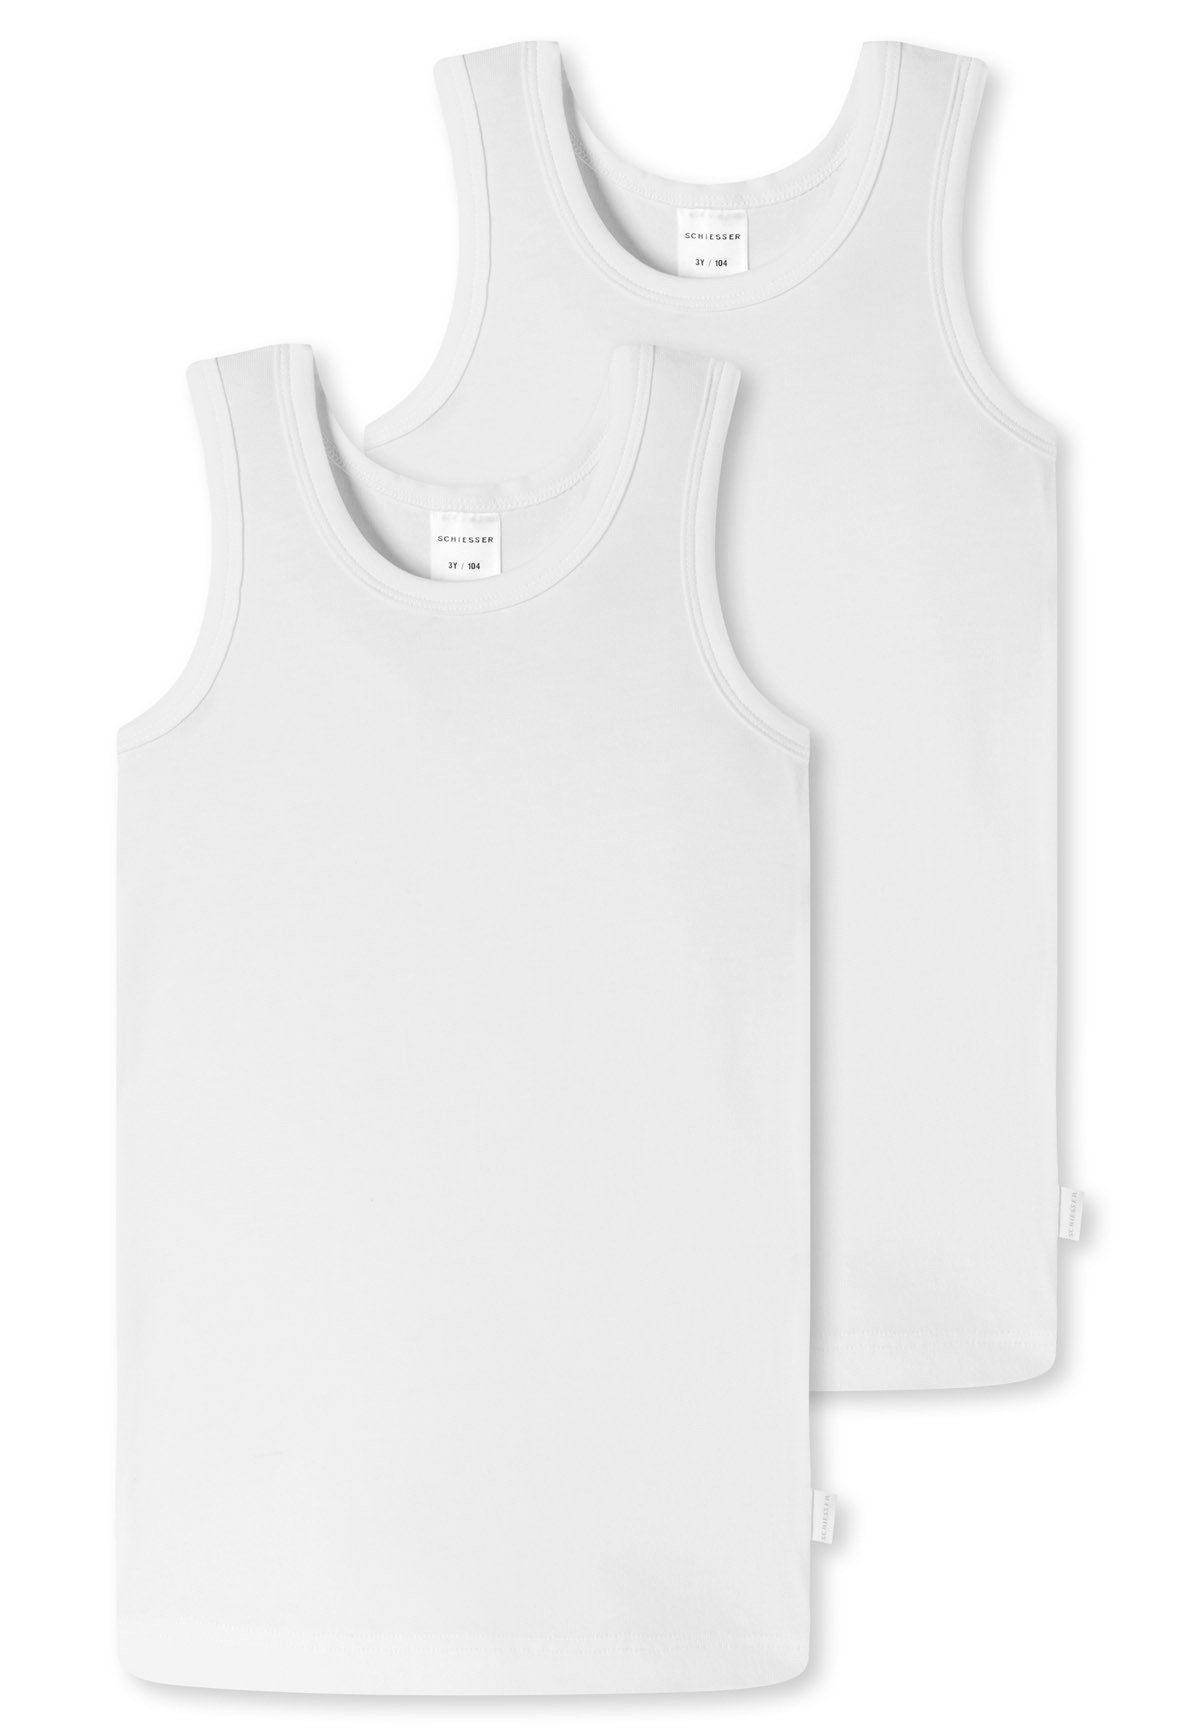 Schiesser Unterhemd Jungen Unterhemd 2er Pack - Organic Cotton Weiß